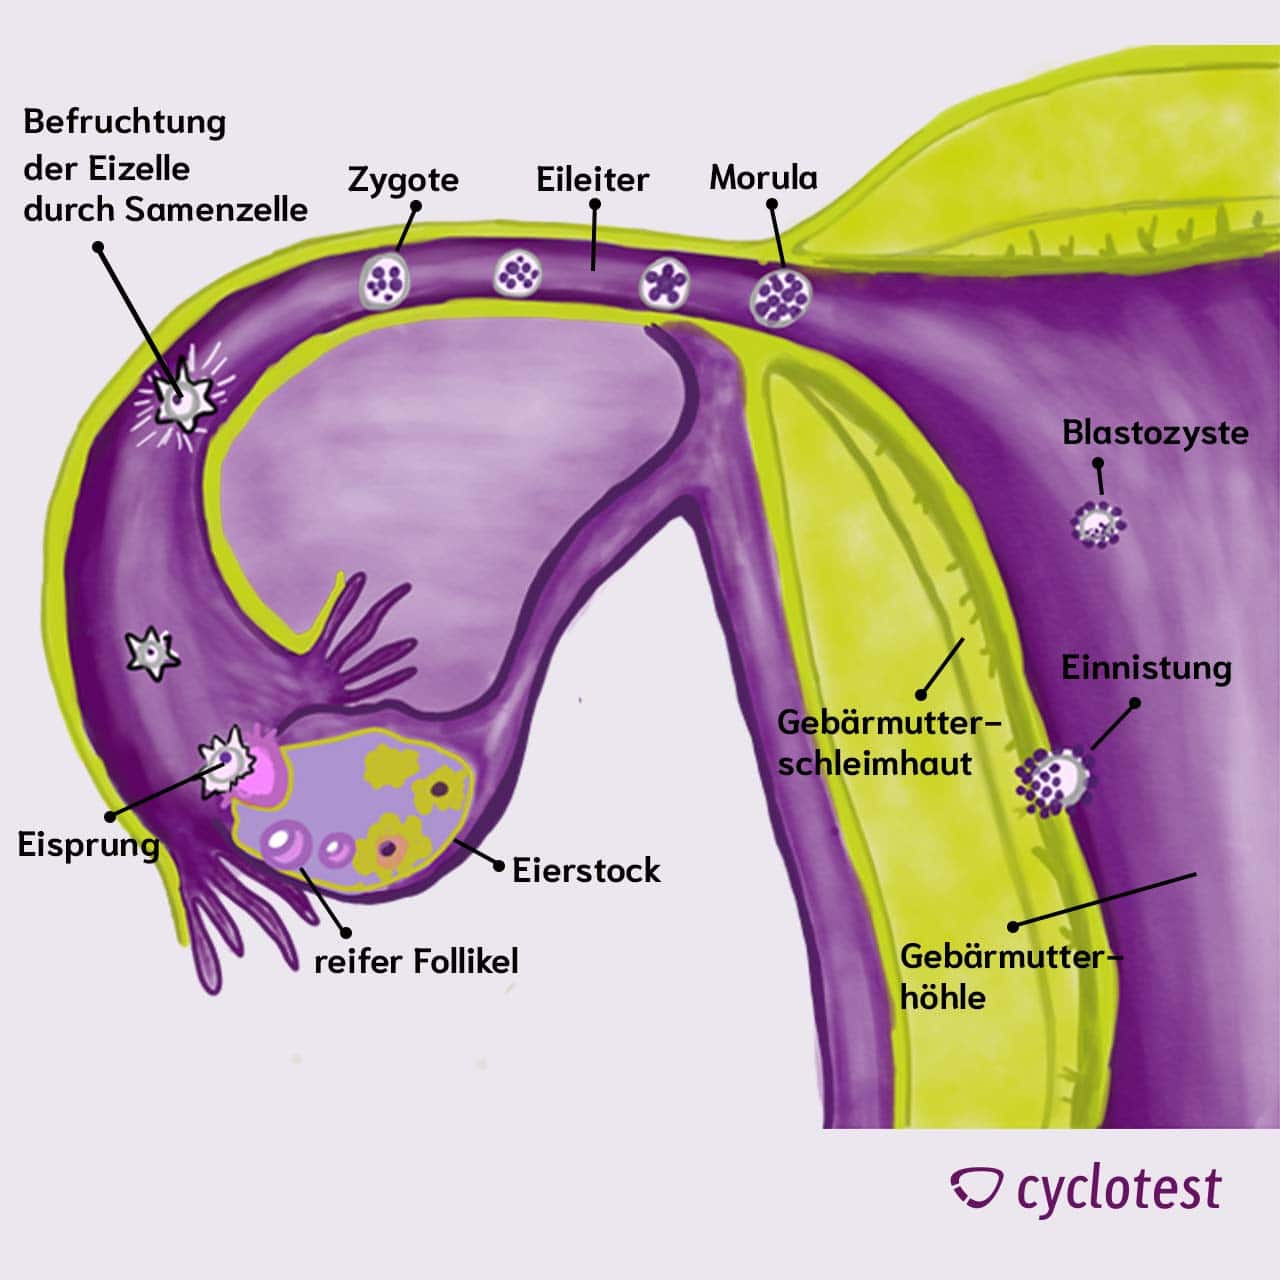 Wenn die Eizelle nach ihrer Befruchtung in der Gebärmutterschleimhaut andockt, kann es zum Einnistungsschmerz kommen.